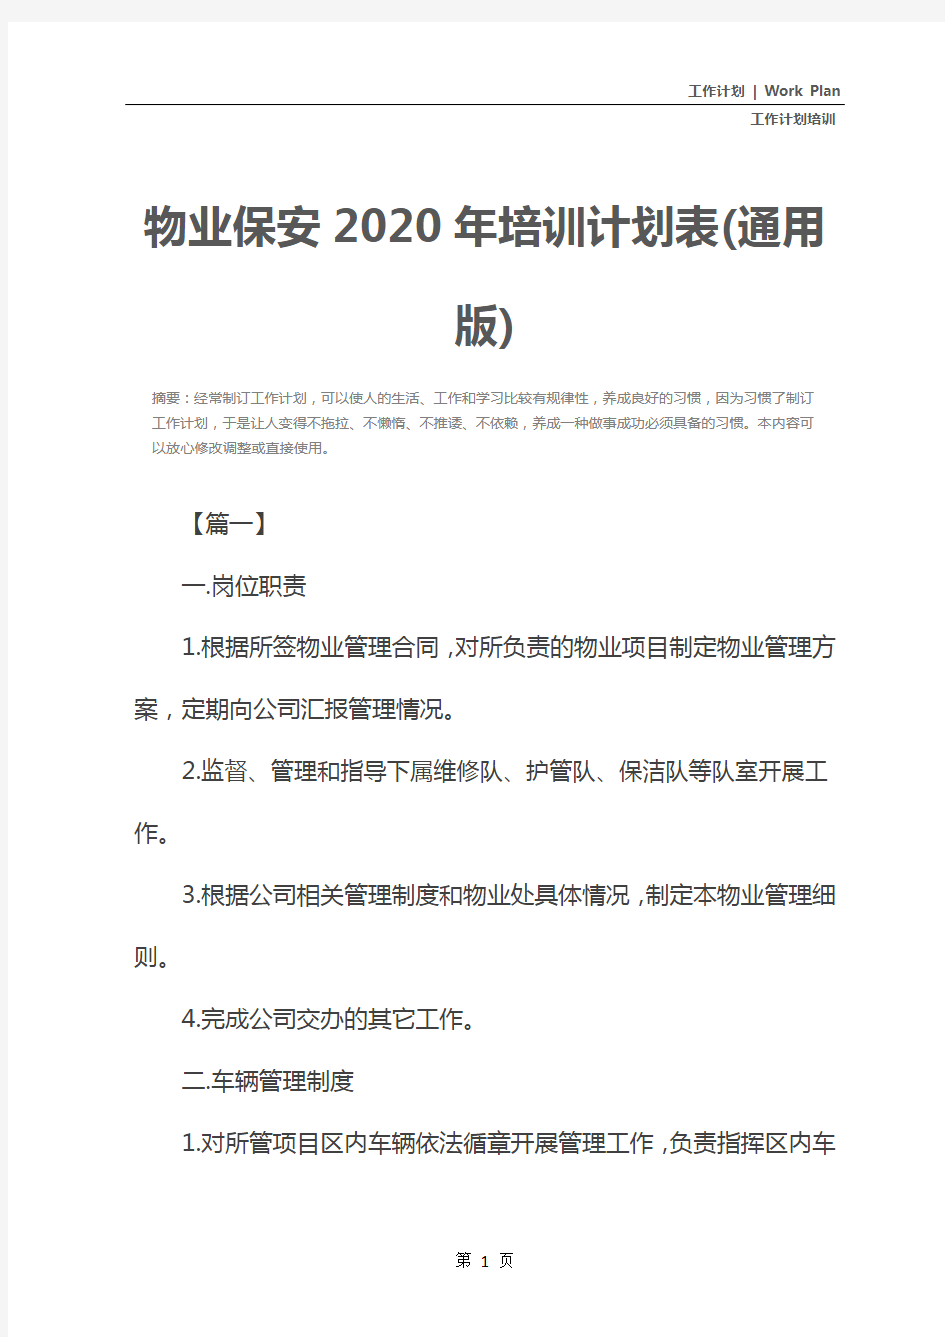 物业保安2020年培训计划表(通用版)